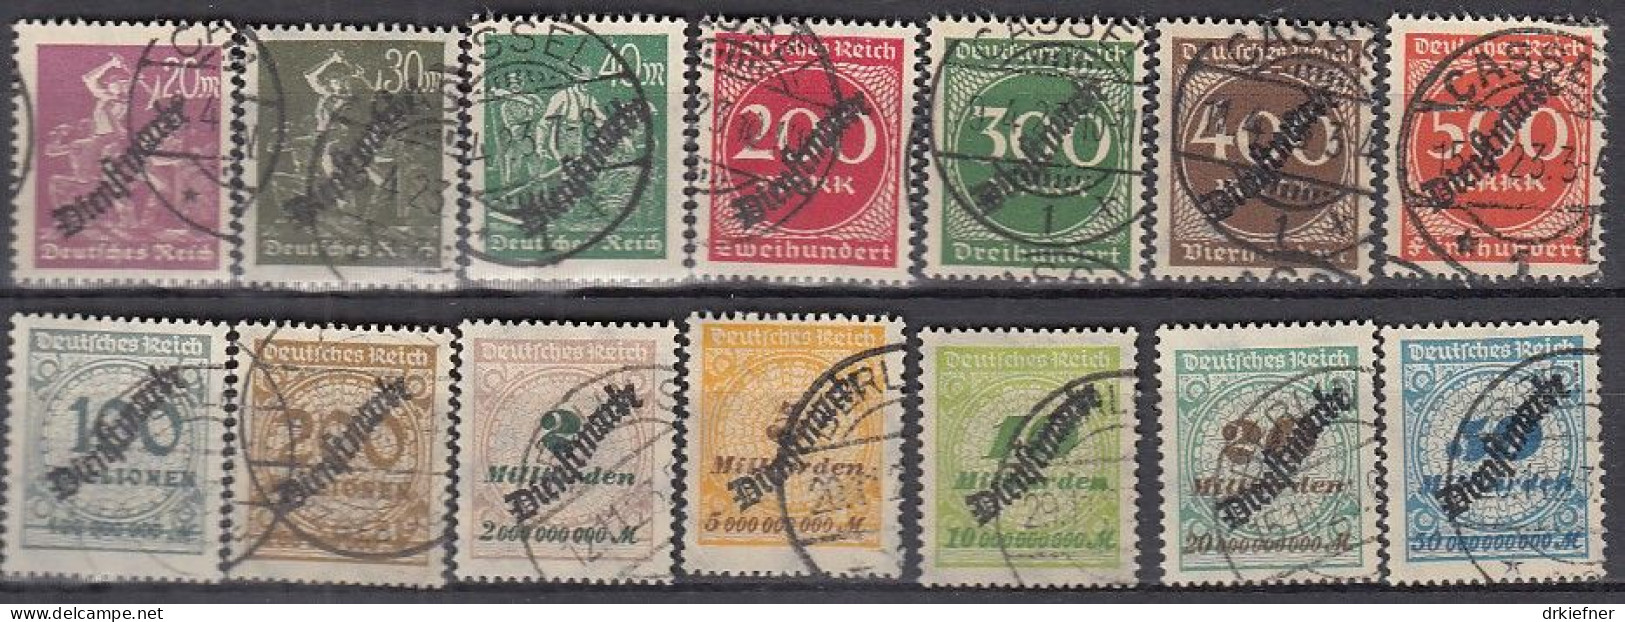 DR  Dienst 75-88, Gestempelt, Nicht Geprüft, Stempel Meist Falsch, 6x HT, Mit Schlangenförmigem Aufdruck, 1921 - Dienstmarken